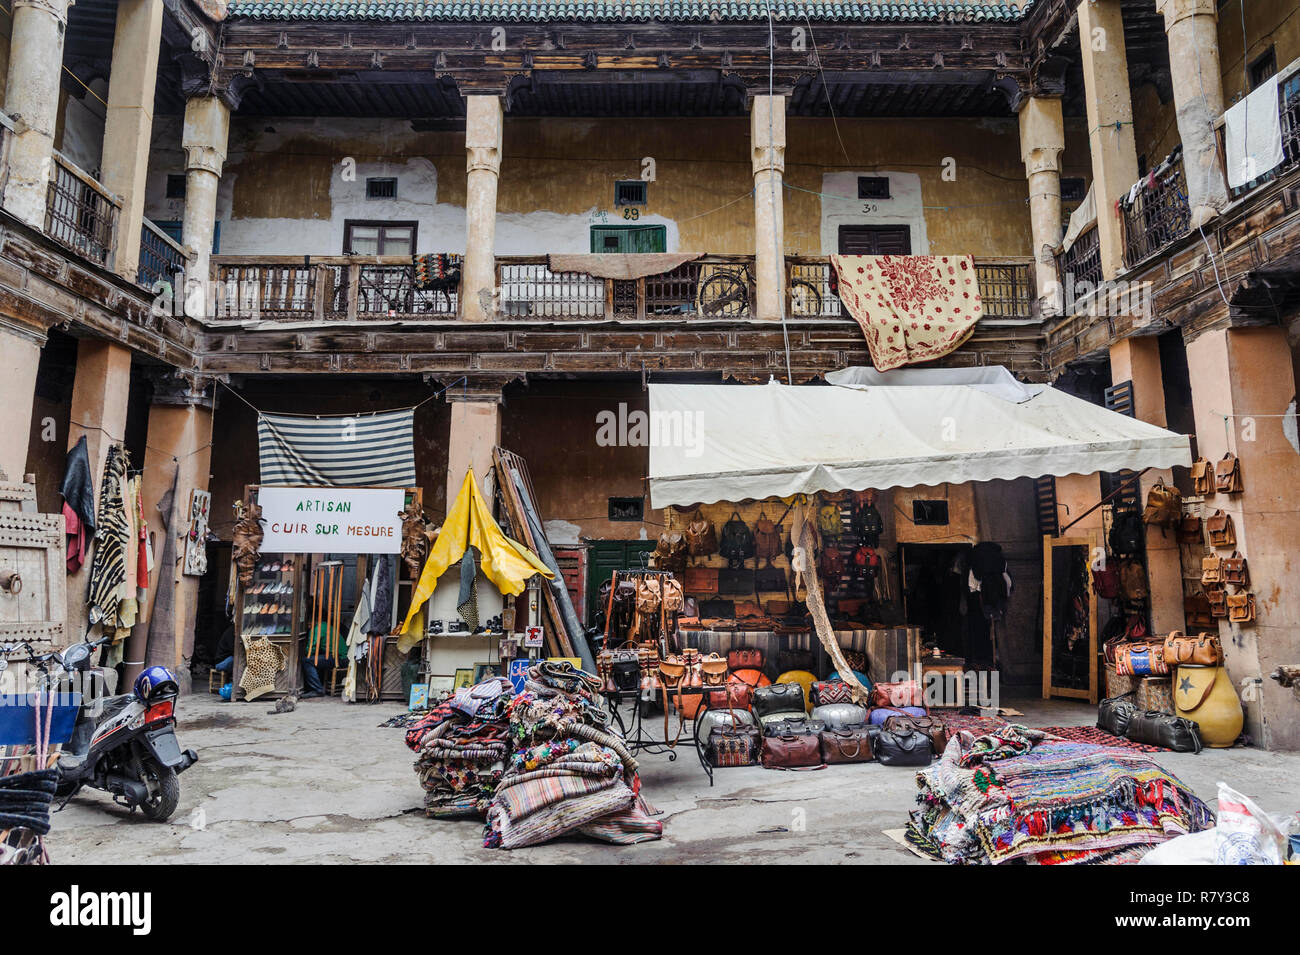 05-03-15, Marrakesch, Marokko. Eine kleine handwerkliche Kunsthandwerkermarkt in der alten, alten Teil der Stadt. Foto: © Simon Grosset Stockfoto